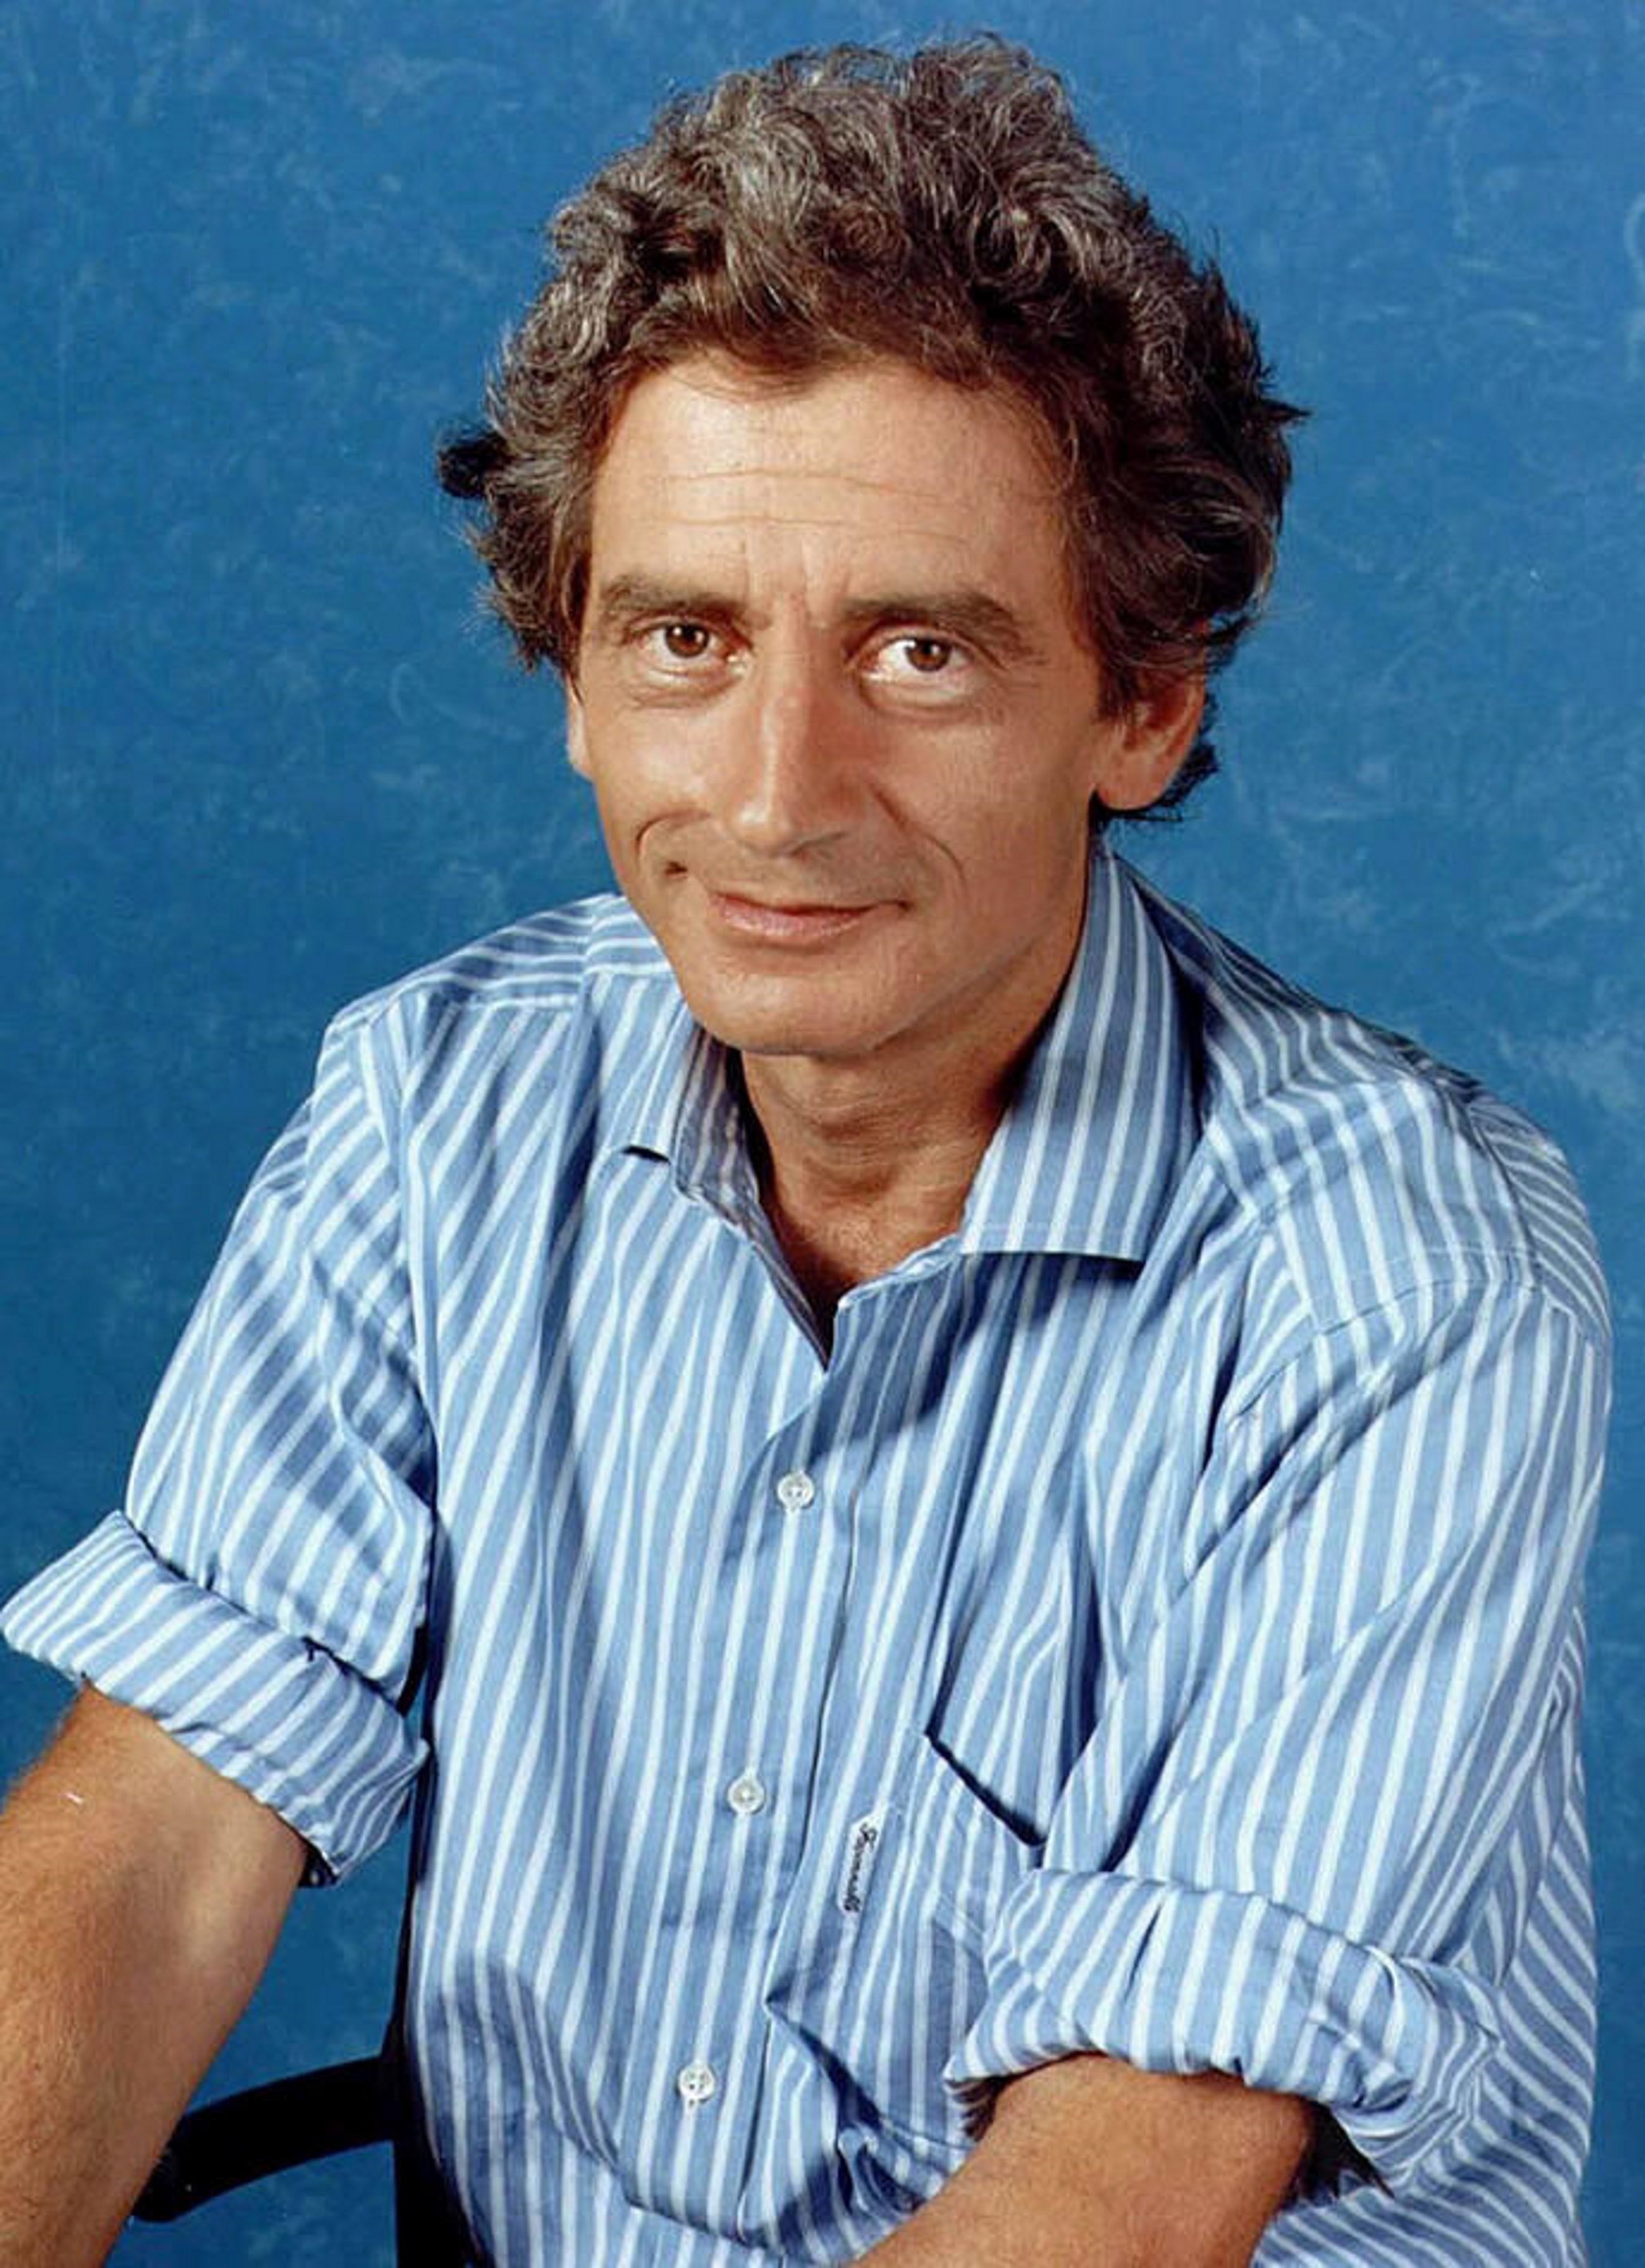 Mor als 75 anys Antonio Gasset, presentador de 'Días de Cine' a TVE